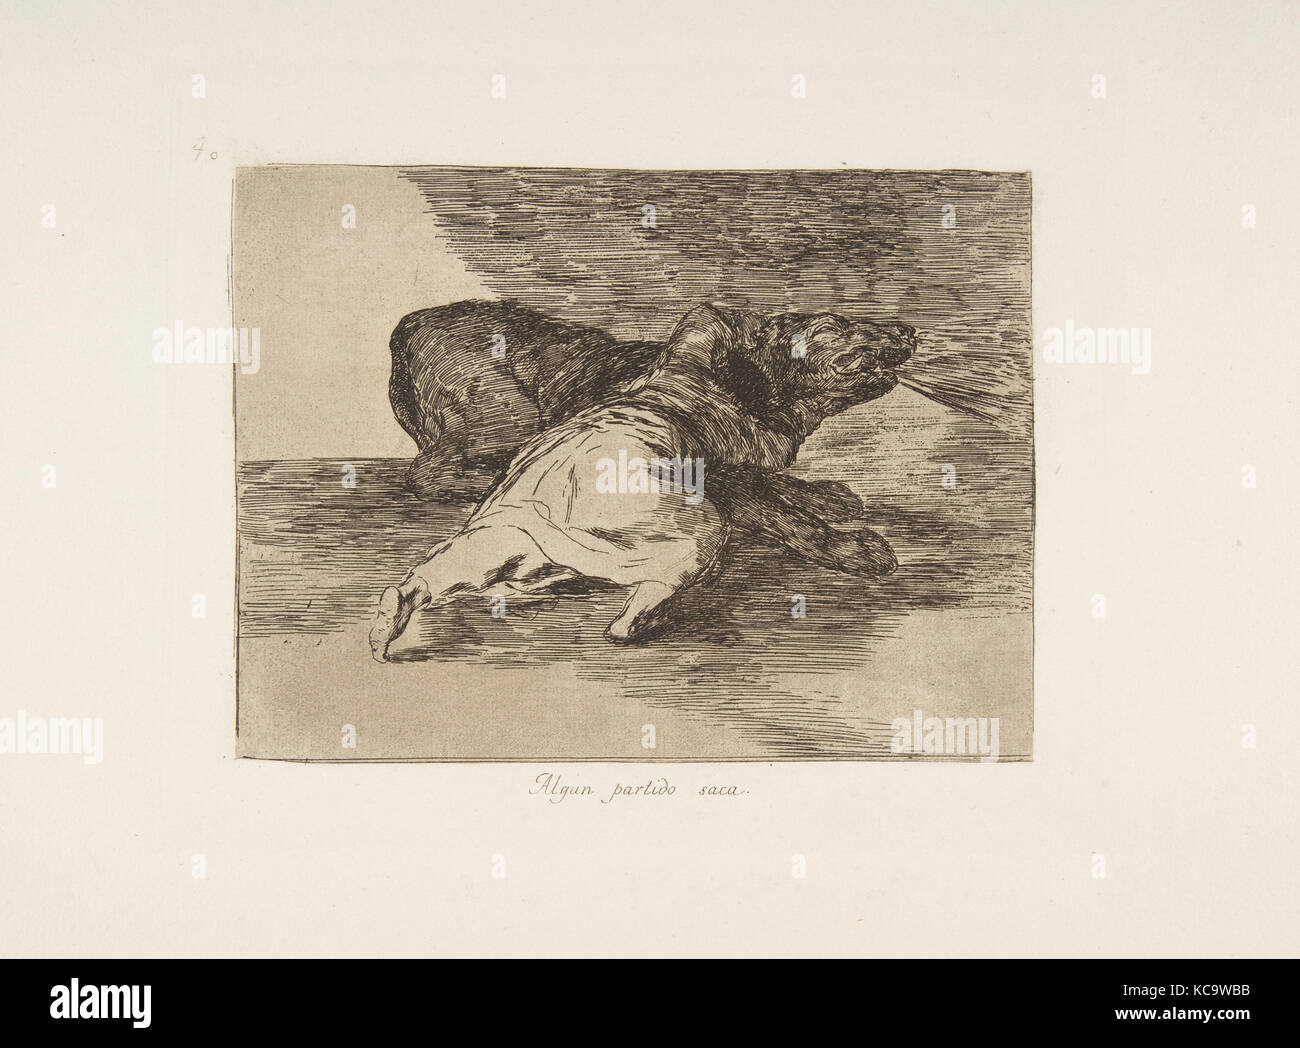 Piastra 40 da 'disastri della guerra" (Los Desastres de La Guerra):"Egli riceve qualcosa di fuori di esso (Algun partido saca), Goya, 1810 Foto Stock